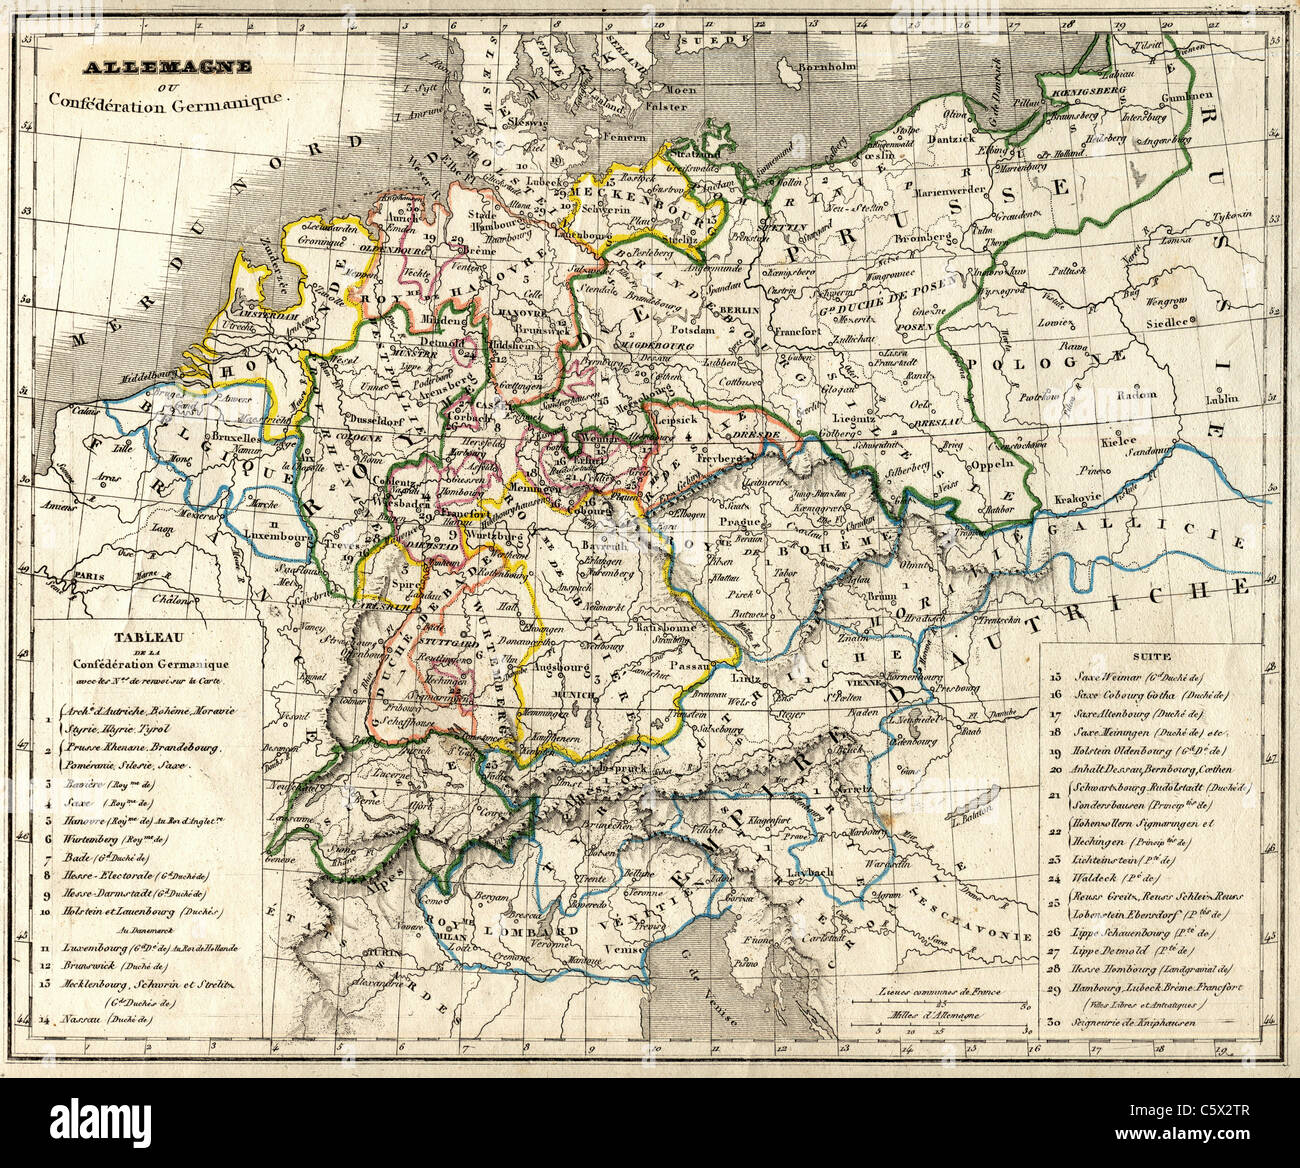 Allemagne ou Eidgenossenschaft Germanique (Deutscher Bund) Antiquarian Karte von 'Atlas Universel de Geographie Ancienne und "Moderne" von C.V. Monin Stockfoto